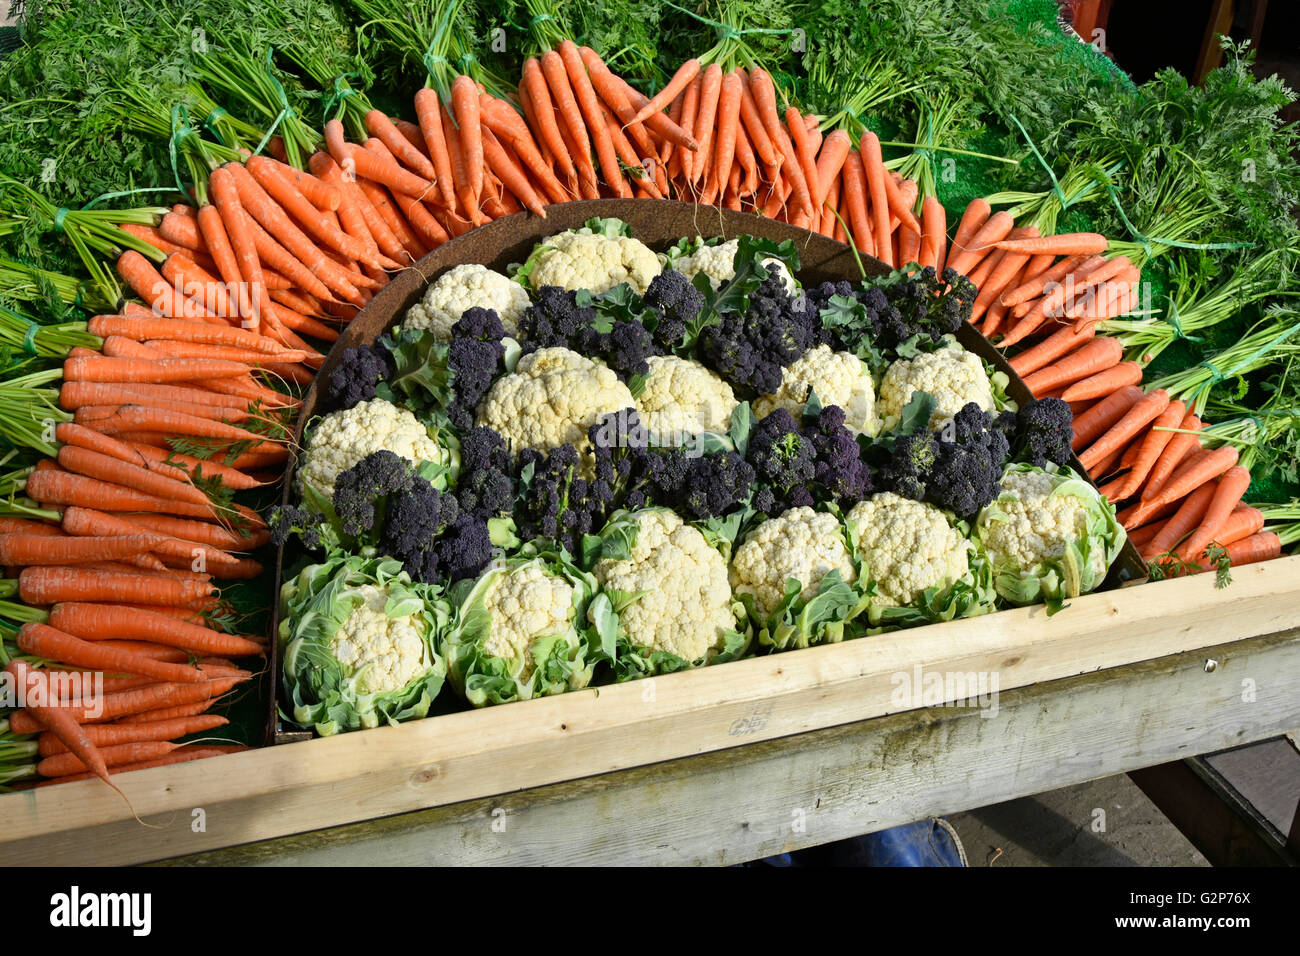 Las zanahorias coliflor, brócoli y organizarse como un día cinco coloridos vegetales display promocional en el carro fuera de la entrada a la tienda granja Essex, Inglaterra Foto de stock